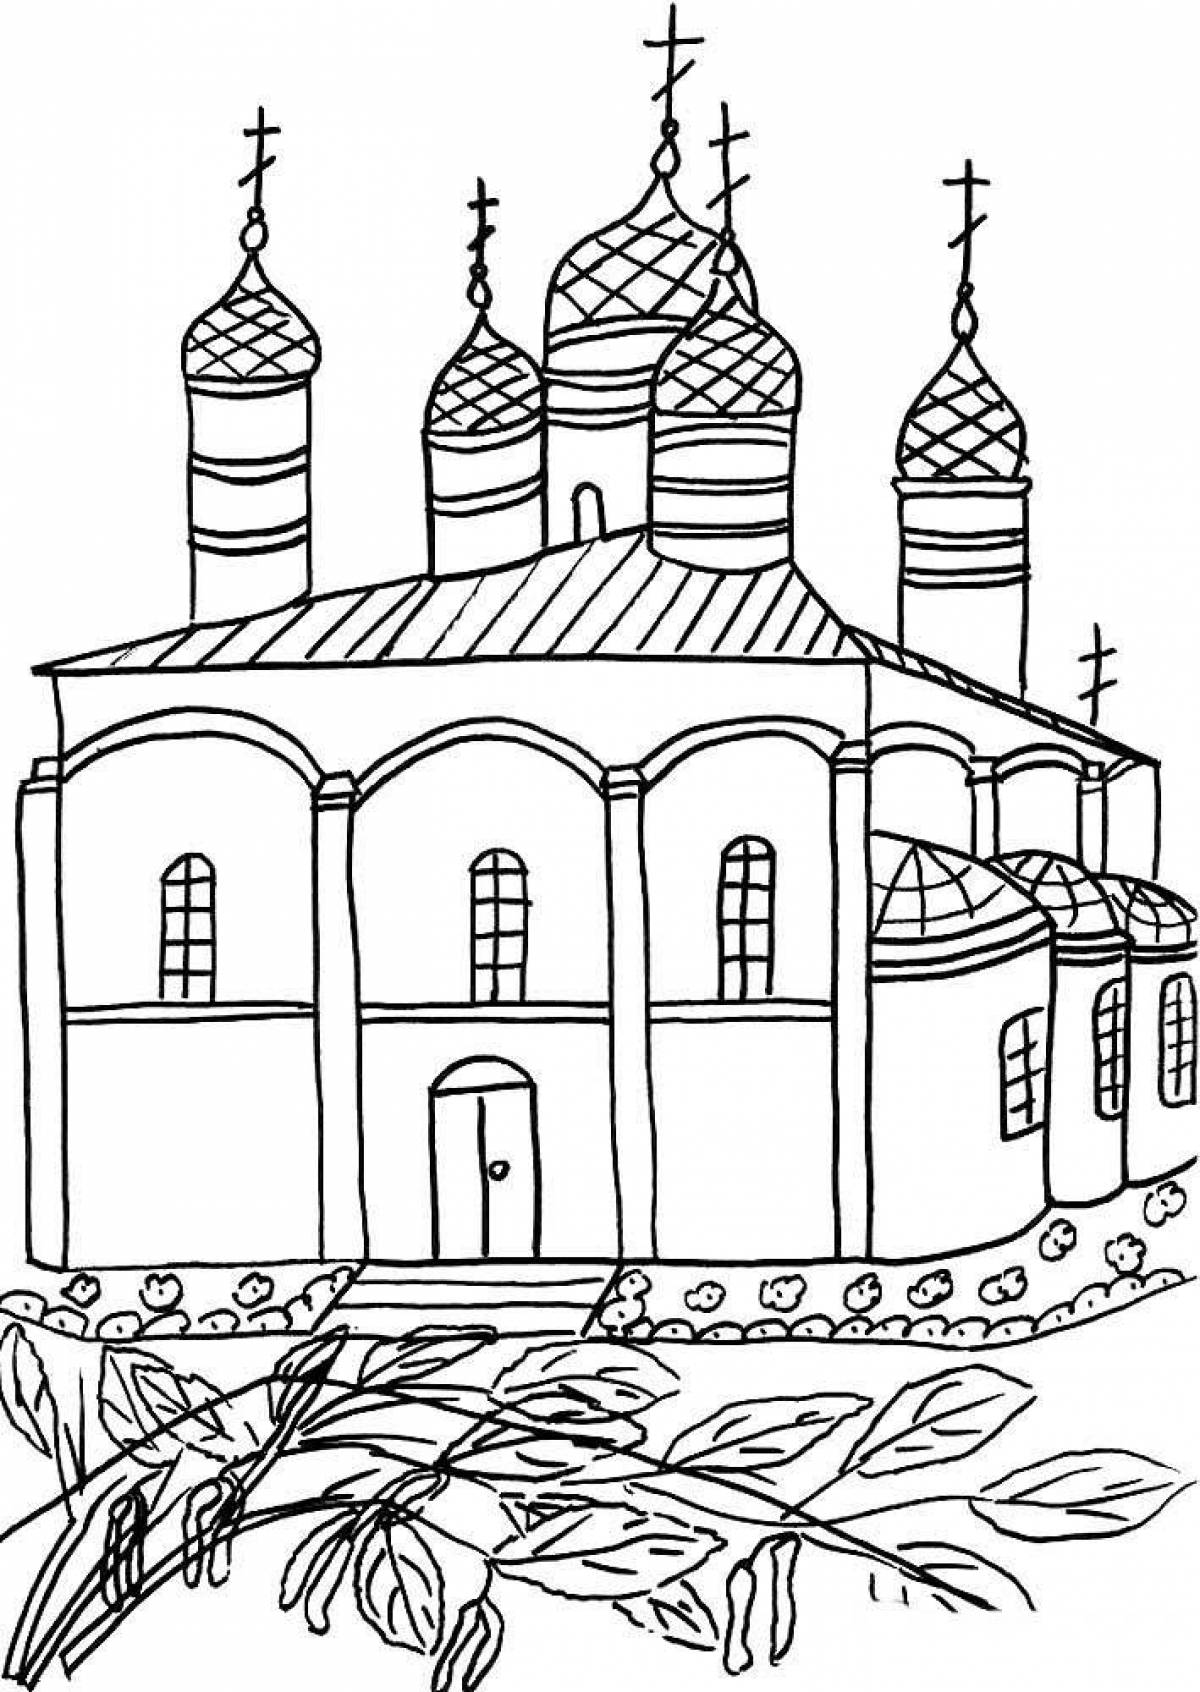 Royal church coloring page